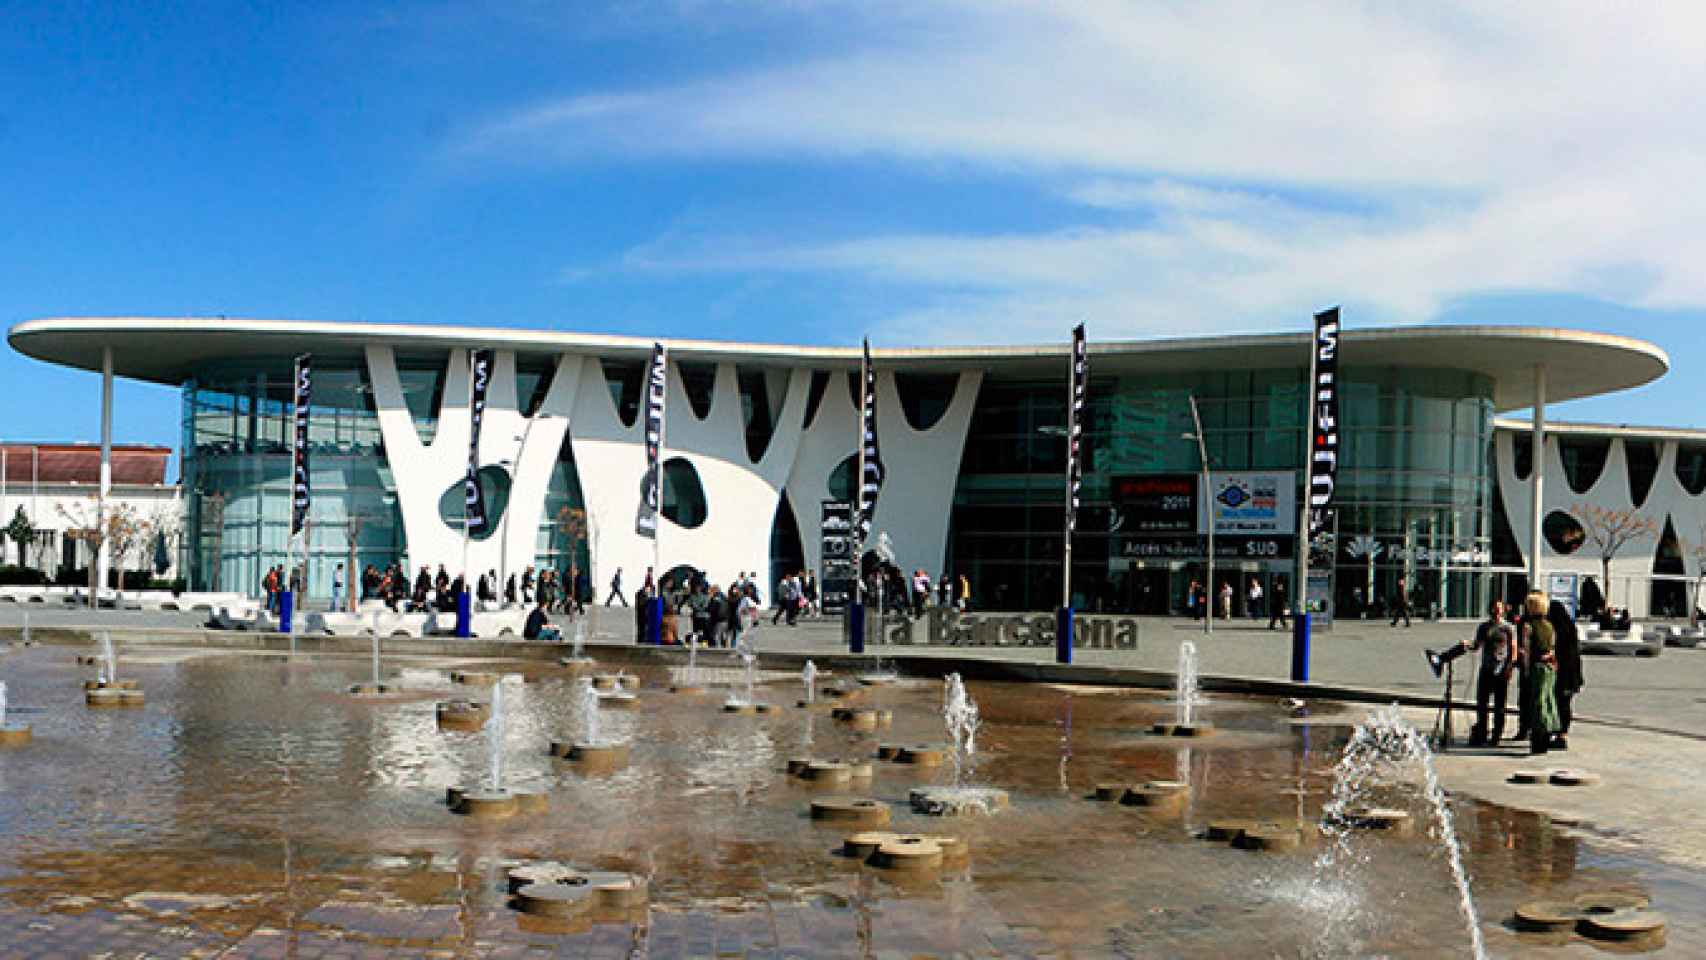 El exterior del recinto de Gran Via de Fira de Barcelona, donde se celebra la primera edición de Iwater / FIRA DE BARCELONA